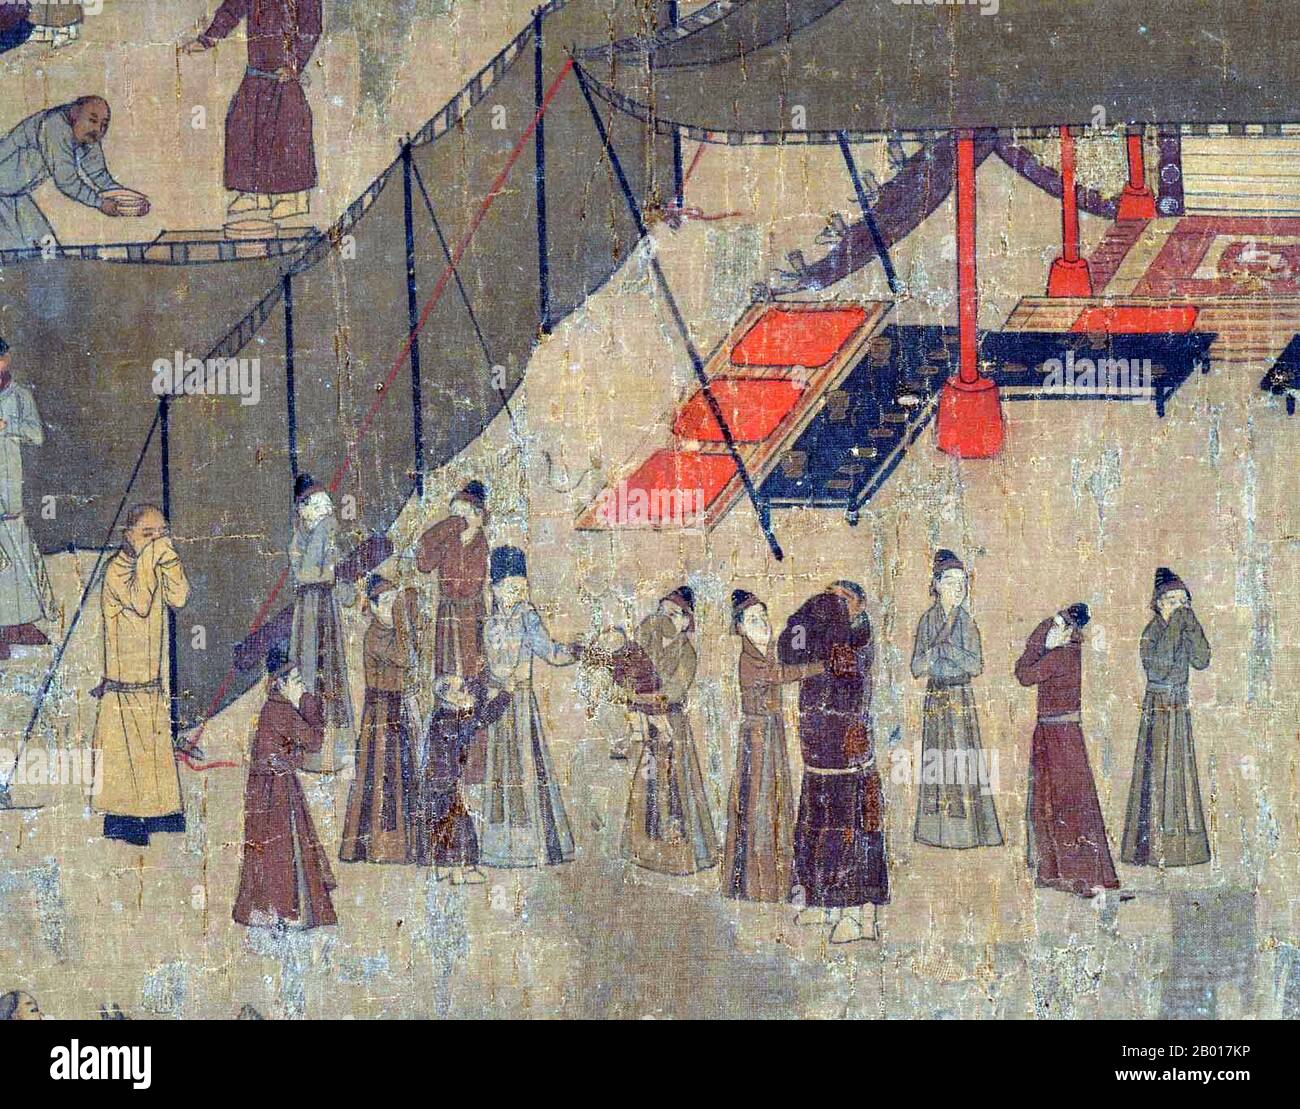 Cina: CAI Wenji (177 CE - ), noto anche come Cai Yan, presso la Corte Xiongnu. Dettaglio della pittura a gradinata, Southern Song Dynasty (1127-1279). CAI Wenji è nato poco prima del 178 CE in quella che ora è Qi County, Kaifeng, Henan. Nel 195, il caos dopo la morte del Cancelliere Dong Zhuo portò i nomadi Xiongnu nella capitale cinese e Cai Wenji fu portato prigioniero nelle terre settentrionali. Durante la sua prigionia, divenne la moglie del capo Xiongnu Liu Bao e gli partorì due figli. Solo dodici anni dopo Cao Cao, il nuovo Cancelliere di Han, la riscattò nel nome del padre. Foto Stock